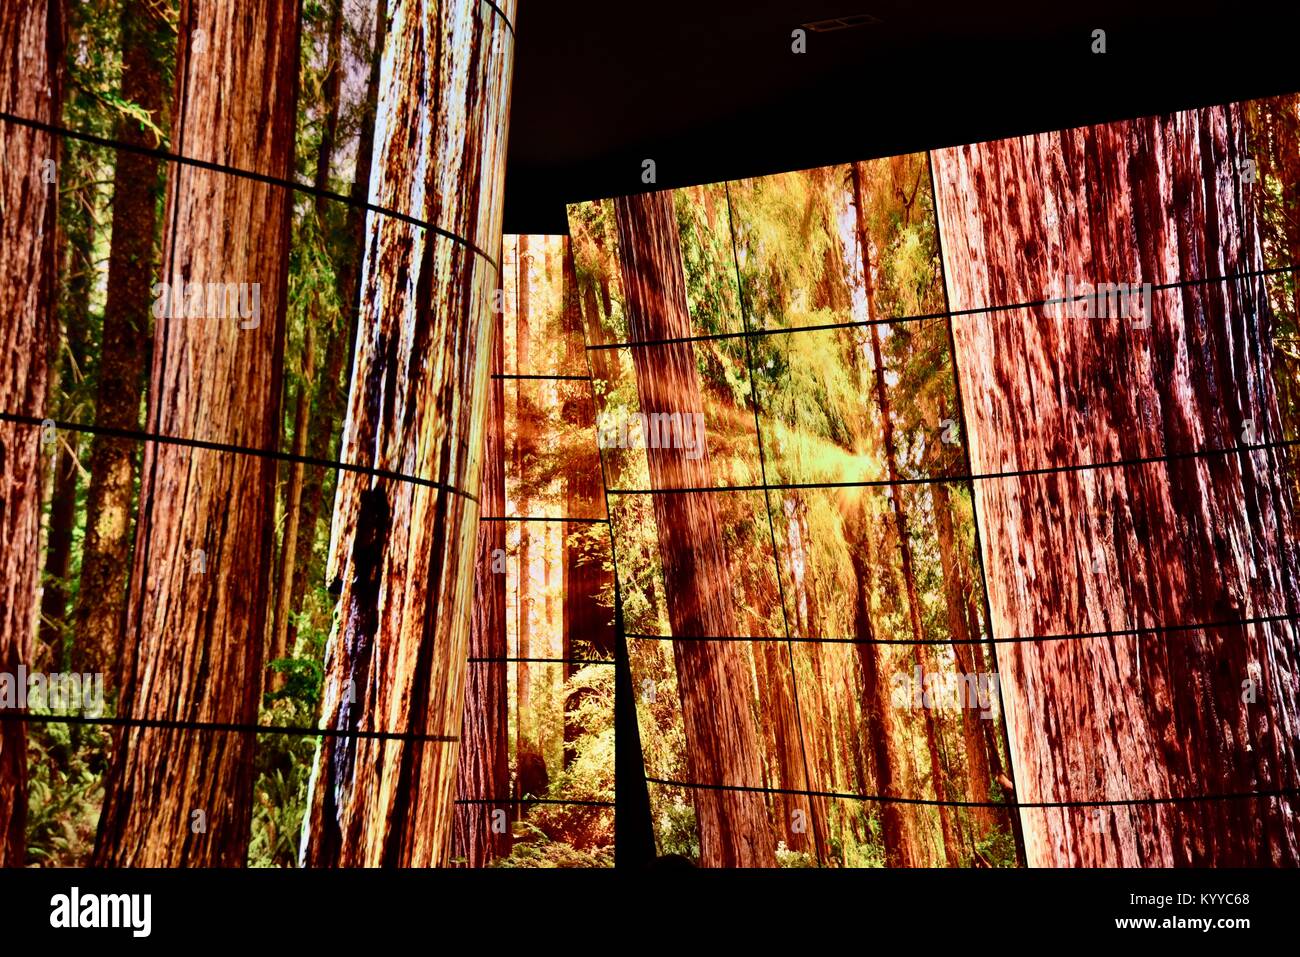 OLED LG Electronics 92-ft de long canyon 'Affichage' de la TVs au CES (Consumer Electronics Show), la plus grande exposition mondiale, à Las Vegas, USA Banque D'Images